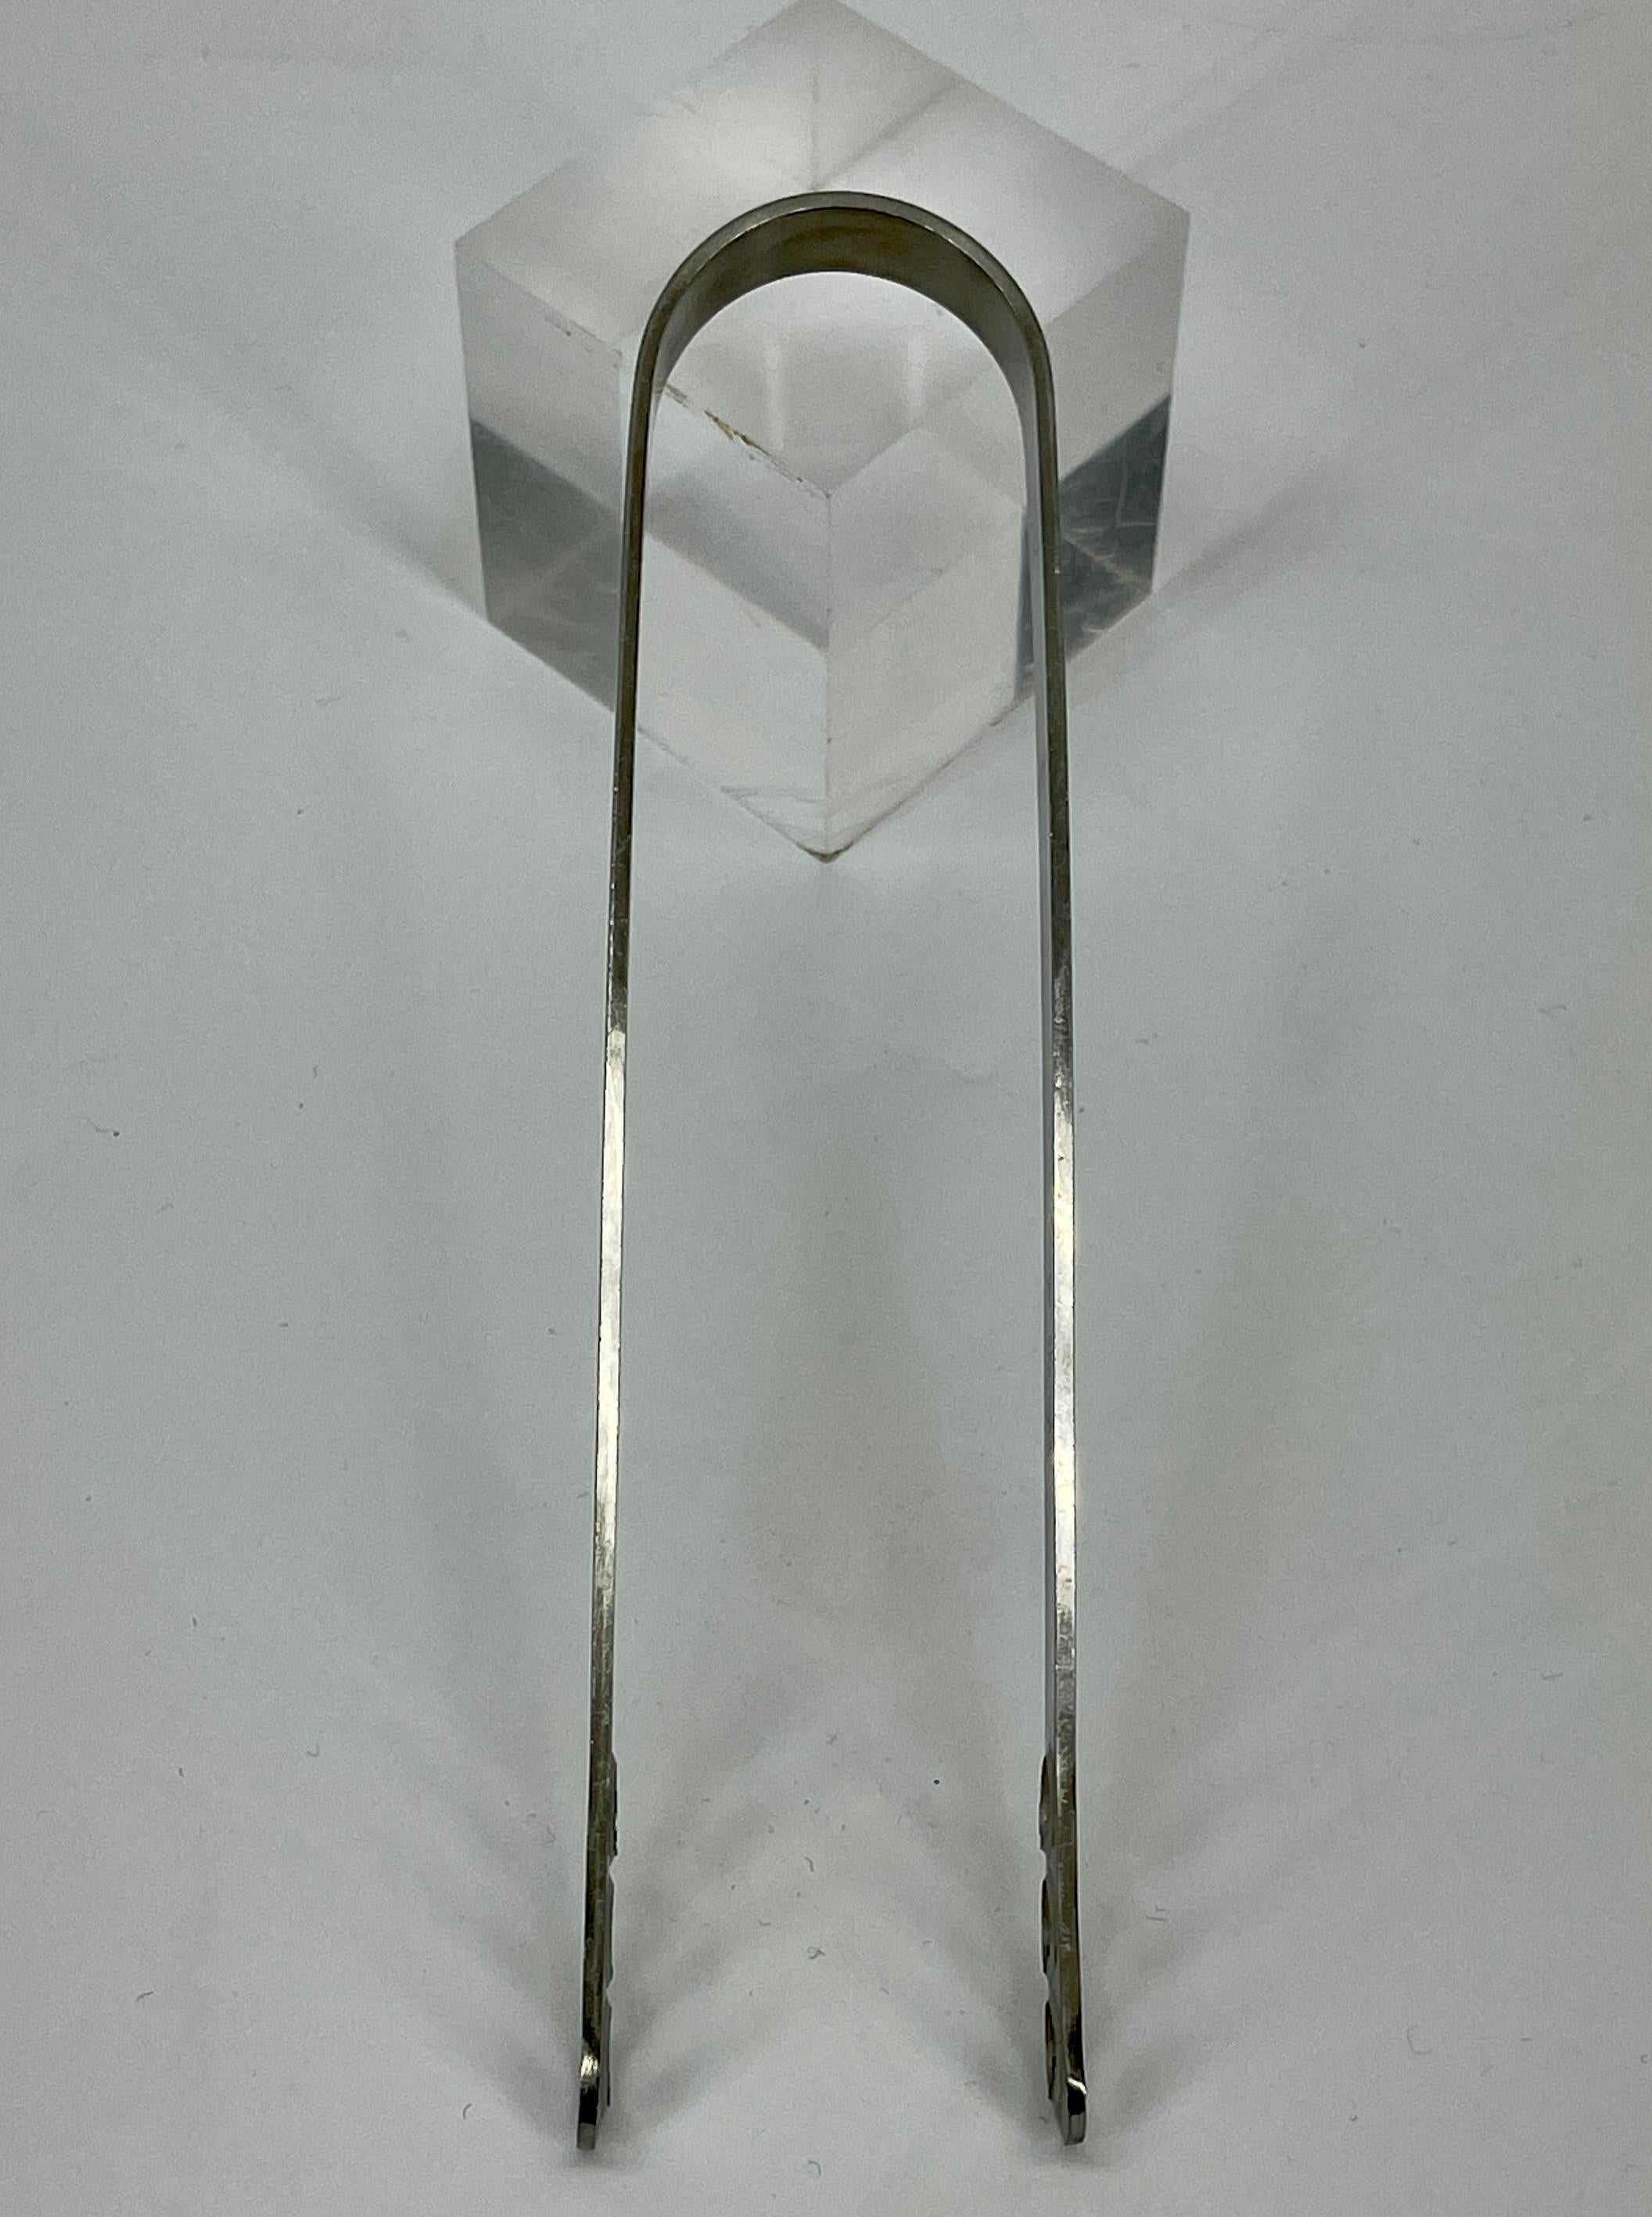 Arne Jacobsen for Stelton Stainless Steel Ice Tong, Danish Mid-Century Modern 2